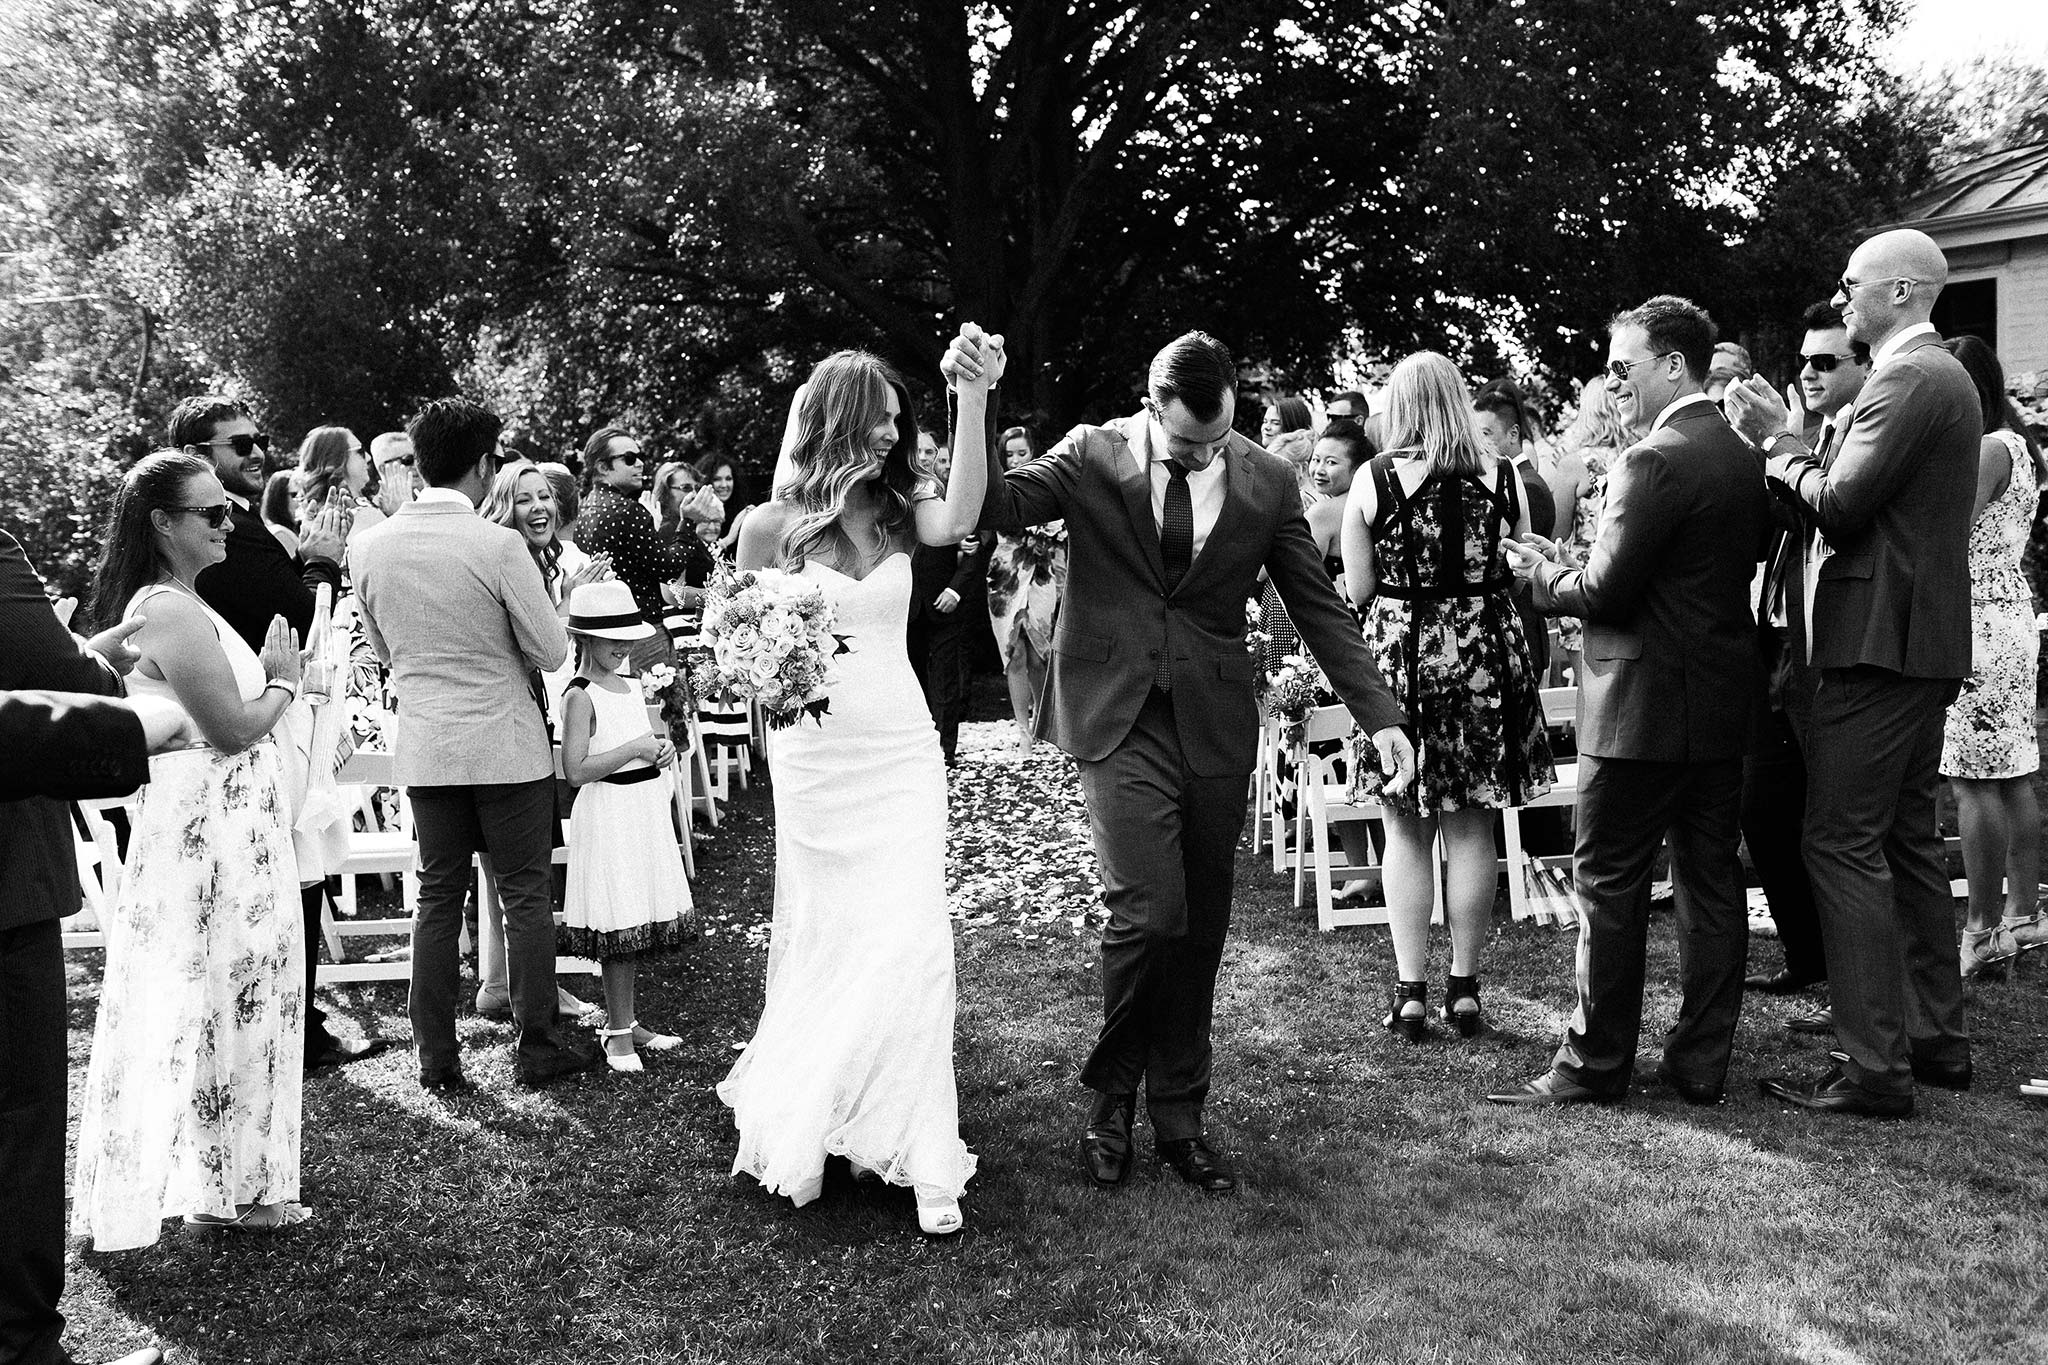 Launceston-Brickendon-Wedding-Photographer-ceremony-exit